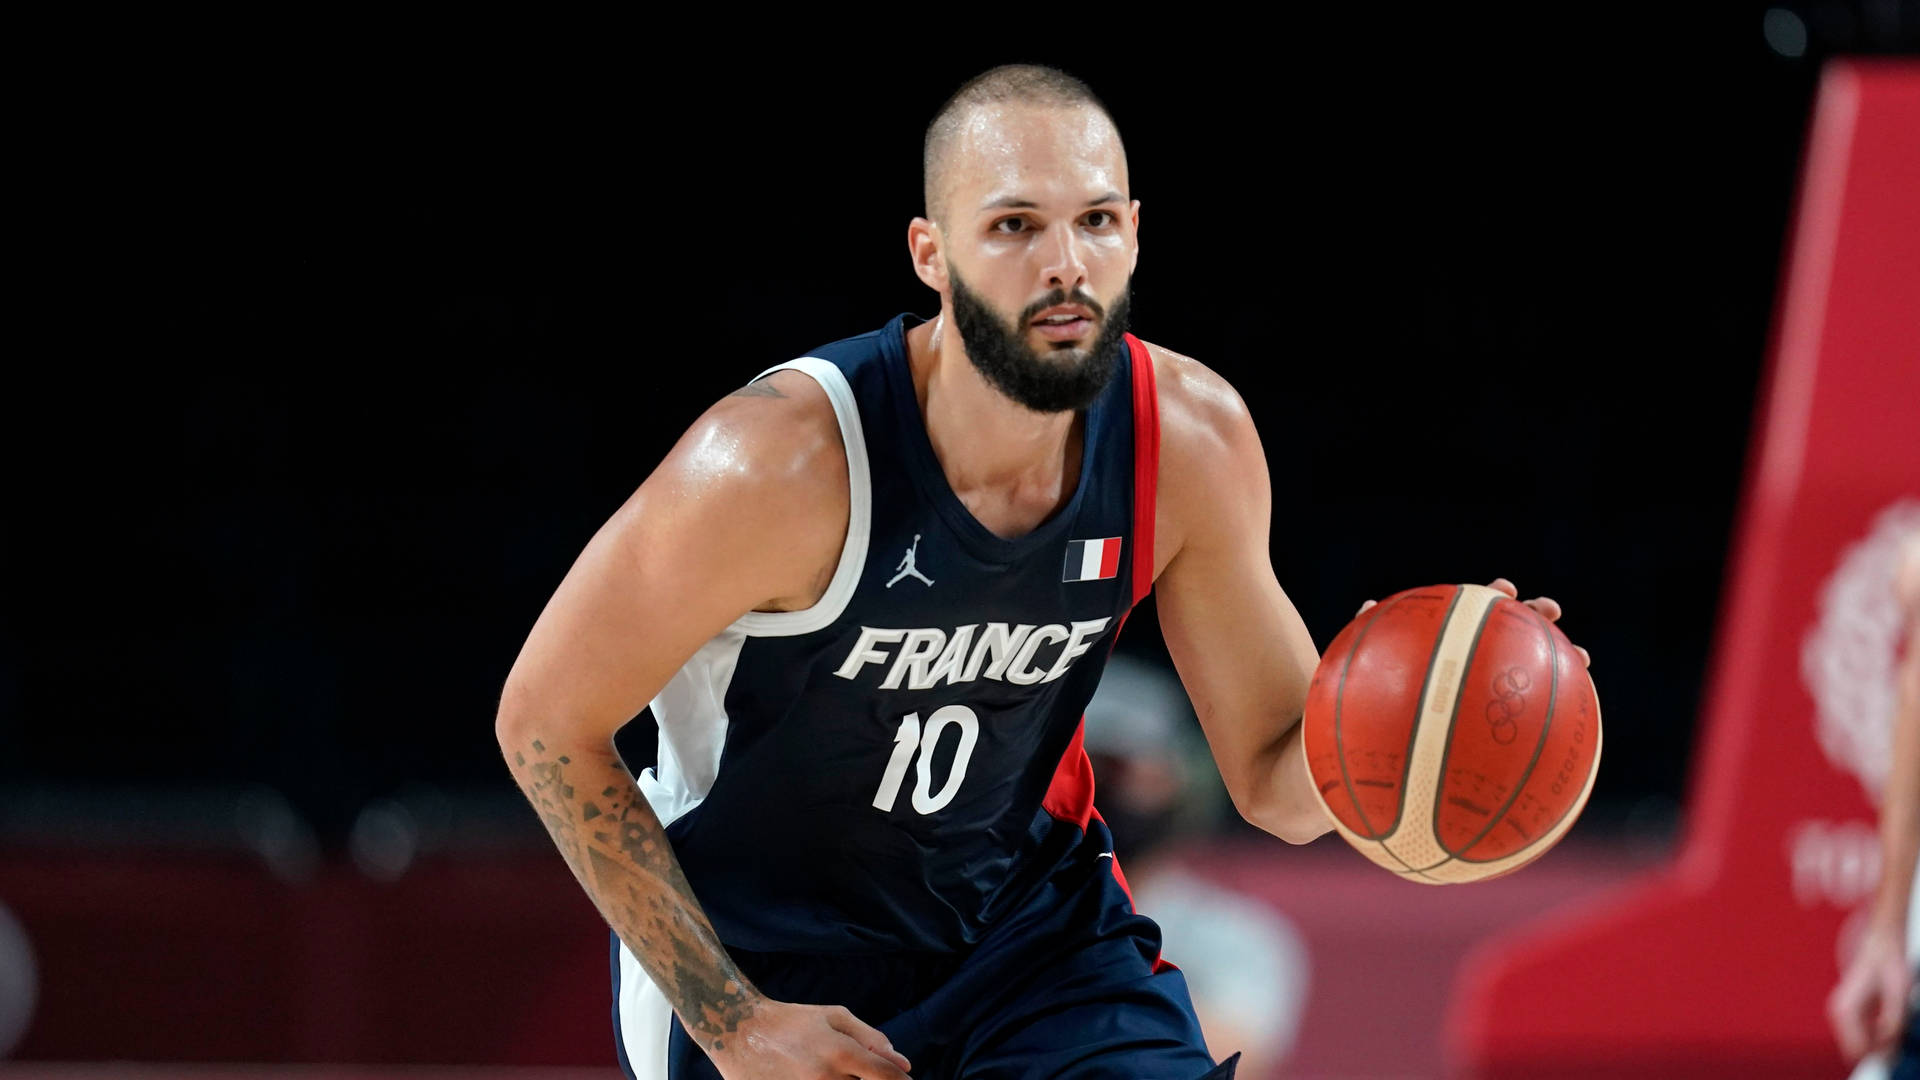 Evanfournier, Jugador De Baloncesto De Francia En Fiba 2019 Fondo de pantalla